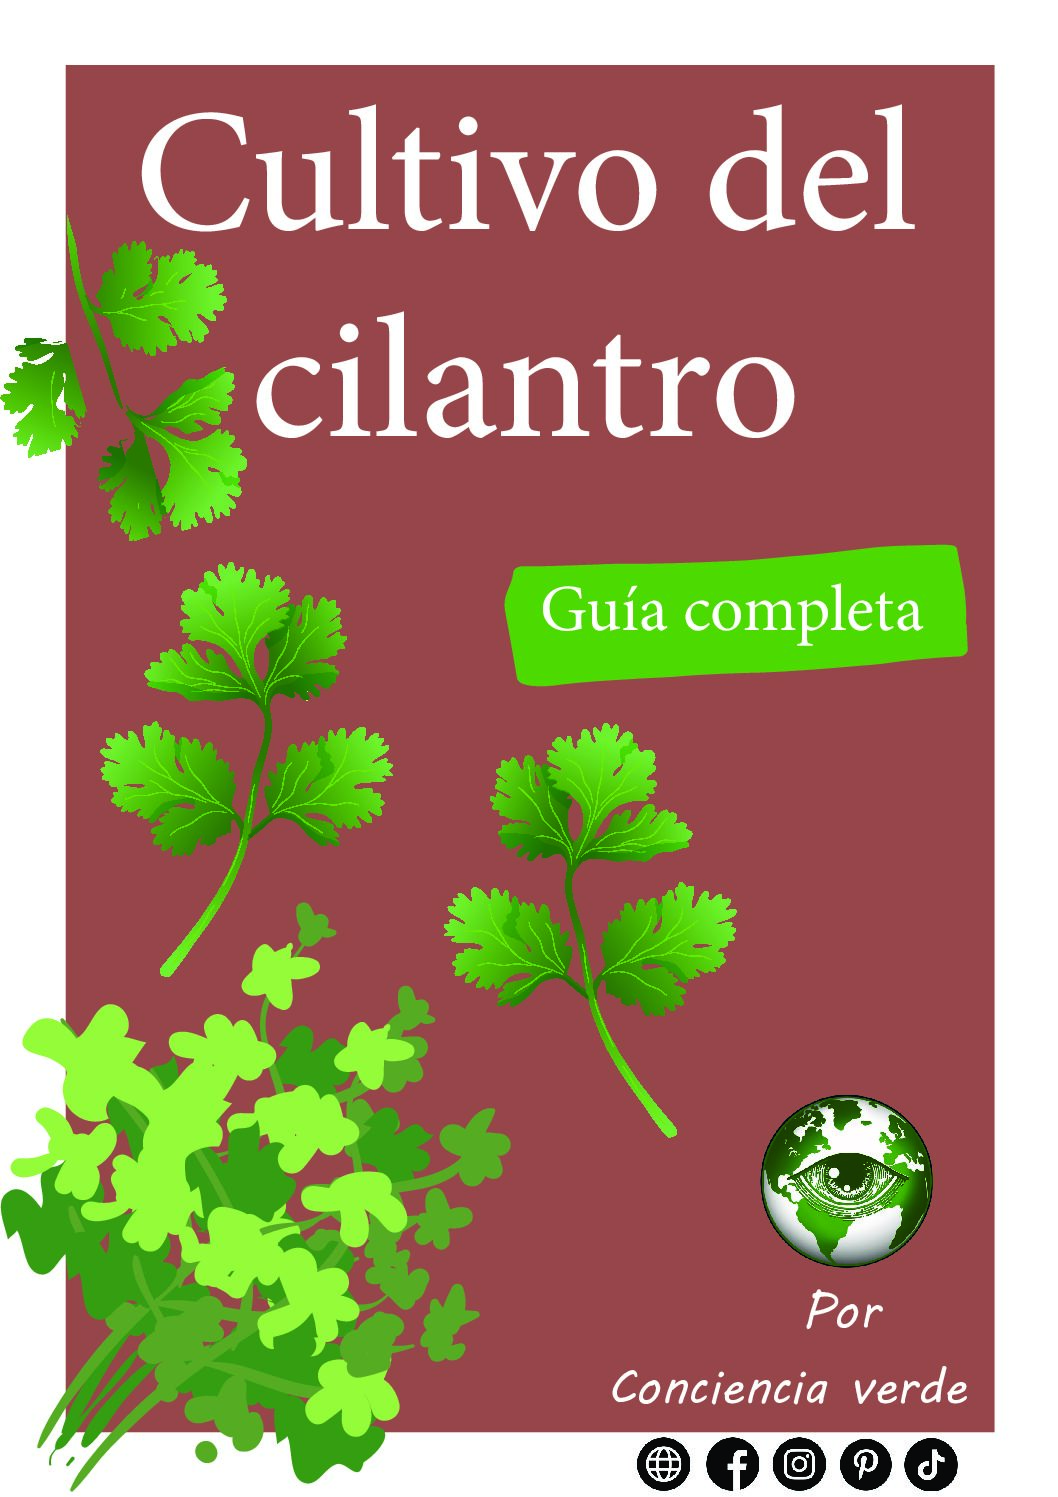 Cultivo de cilantro - Guía completa digital